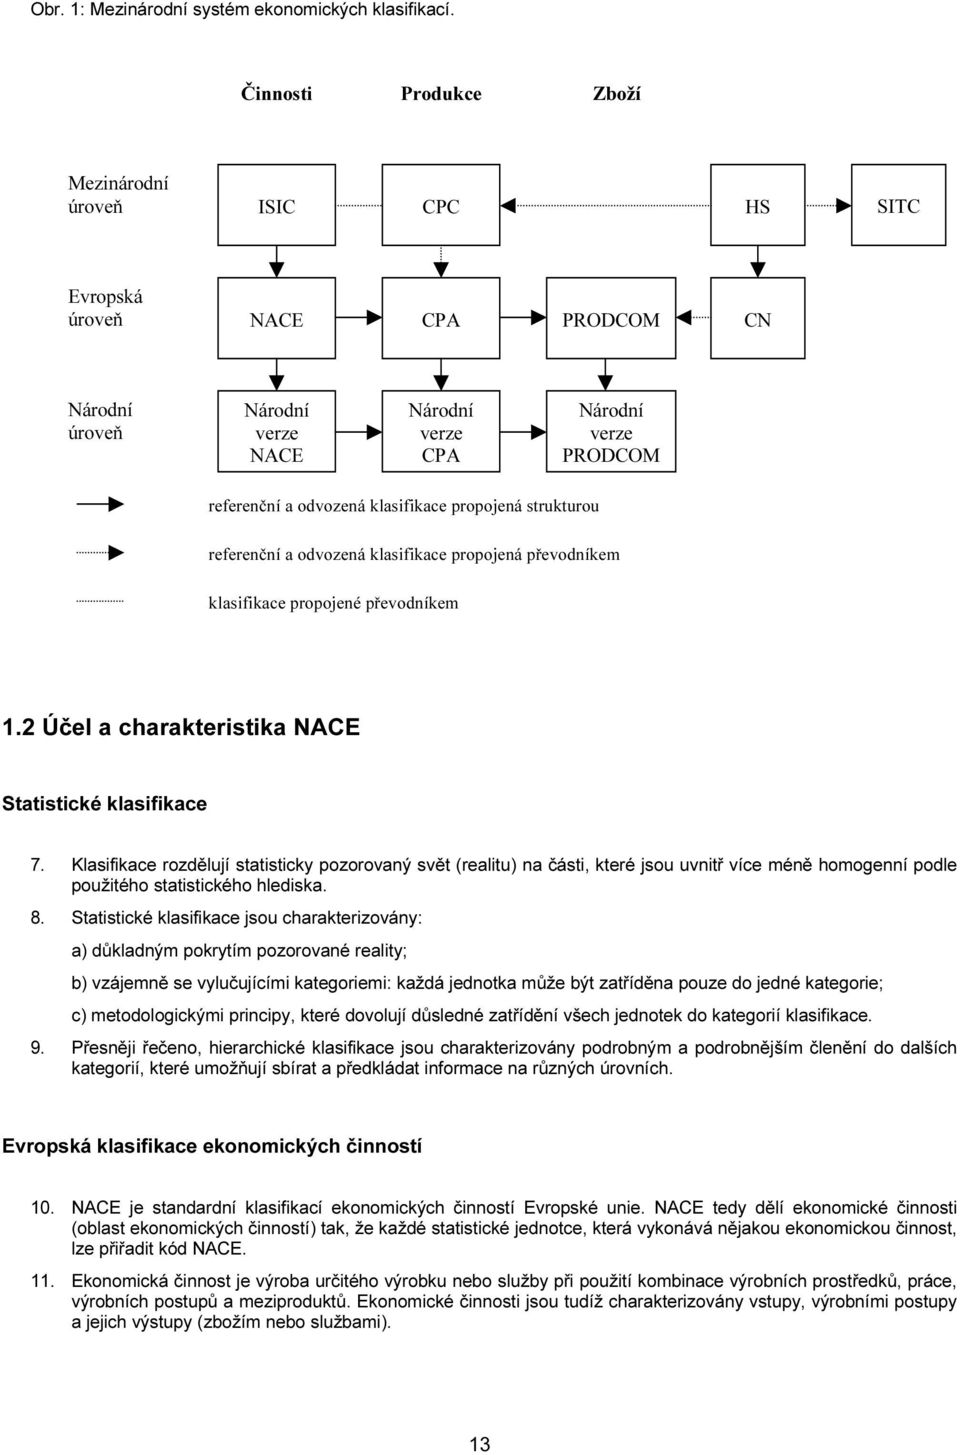 klasifikace propojená strukturou referenční a odvozená klasifikace propojená převodníkem klasifikace propojené převodníkem 1.2 Účel a charakteristika NACE Statistické klasifikace 7.